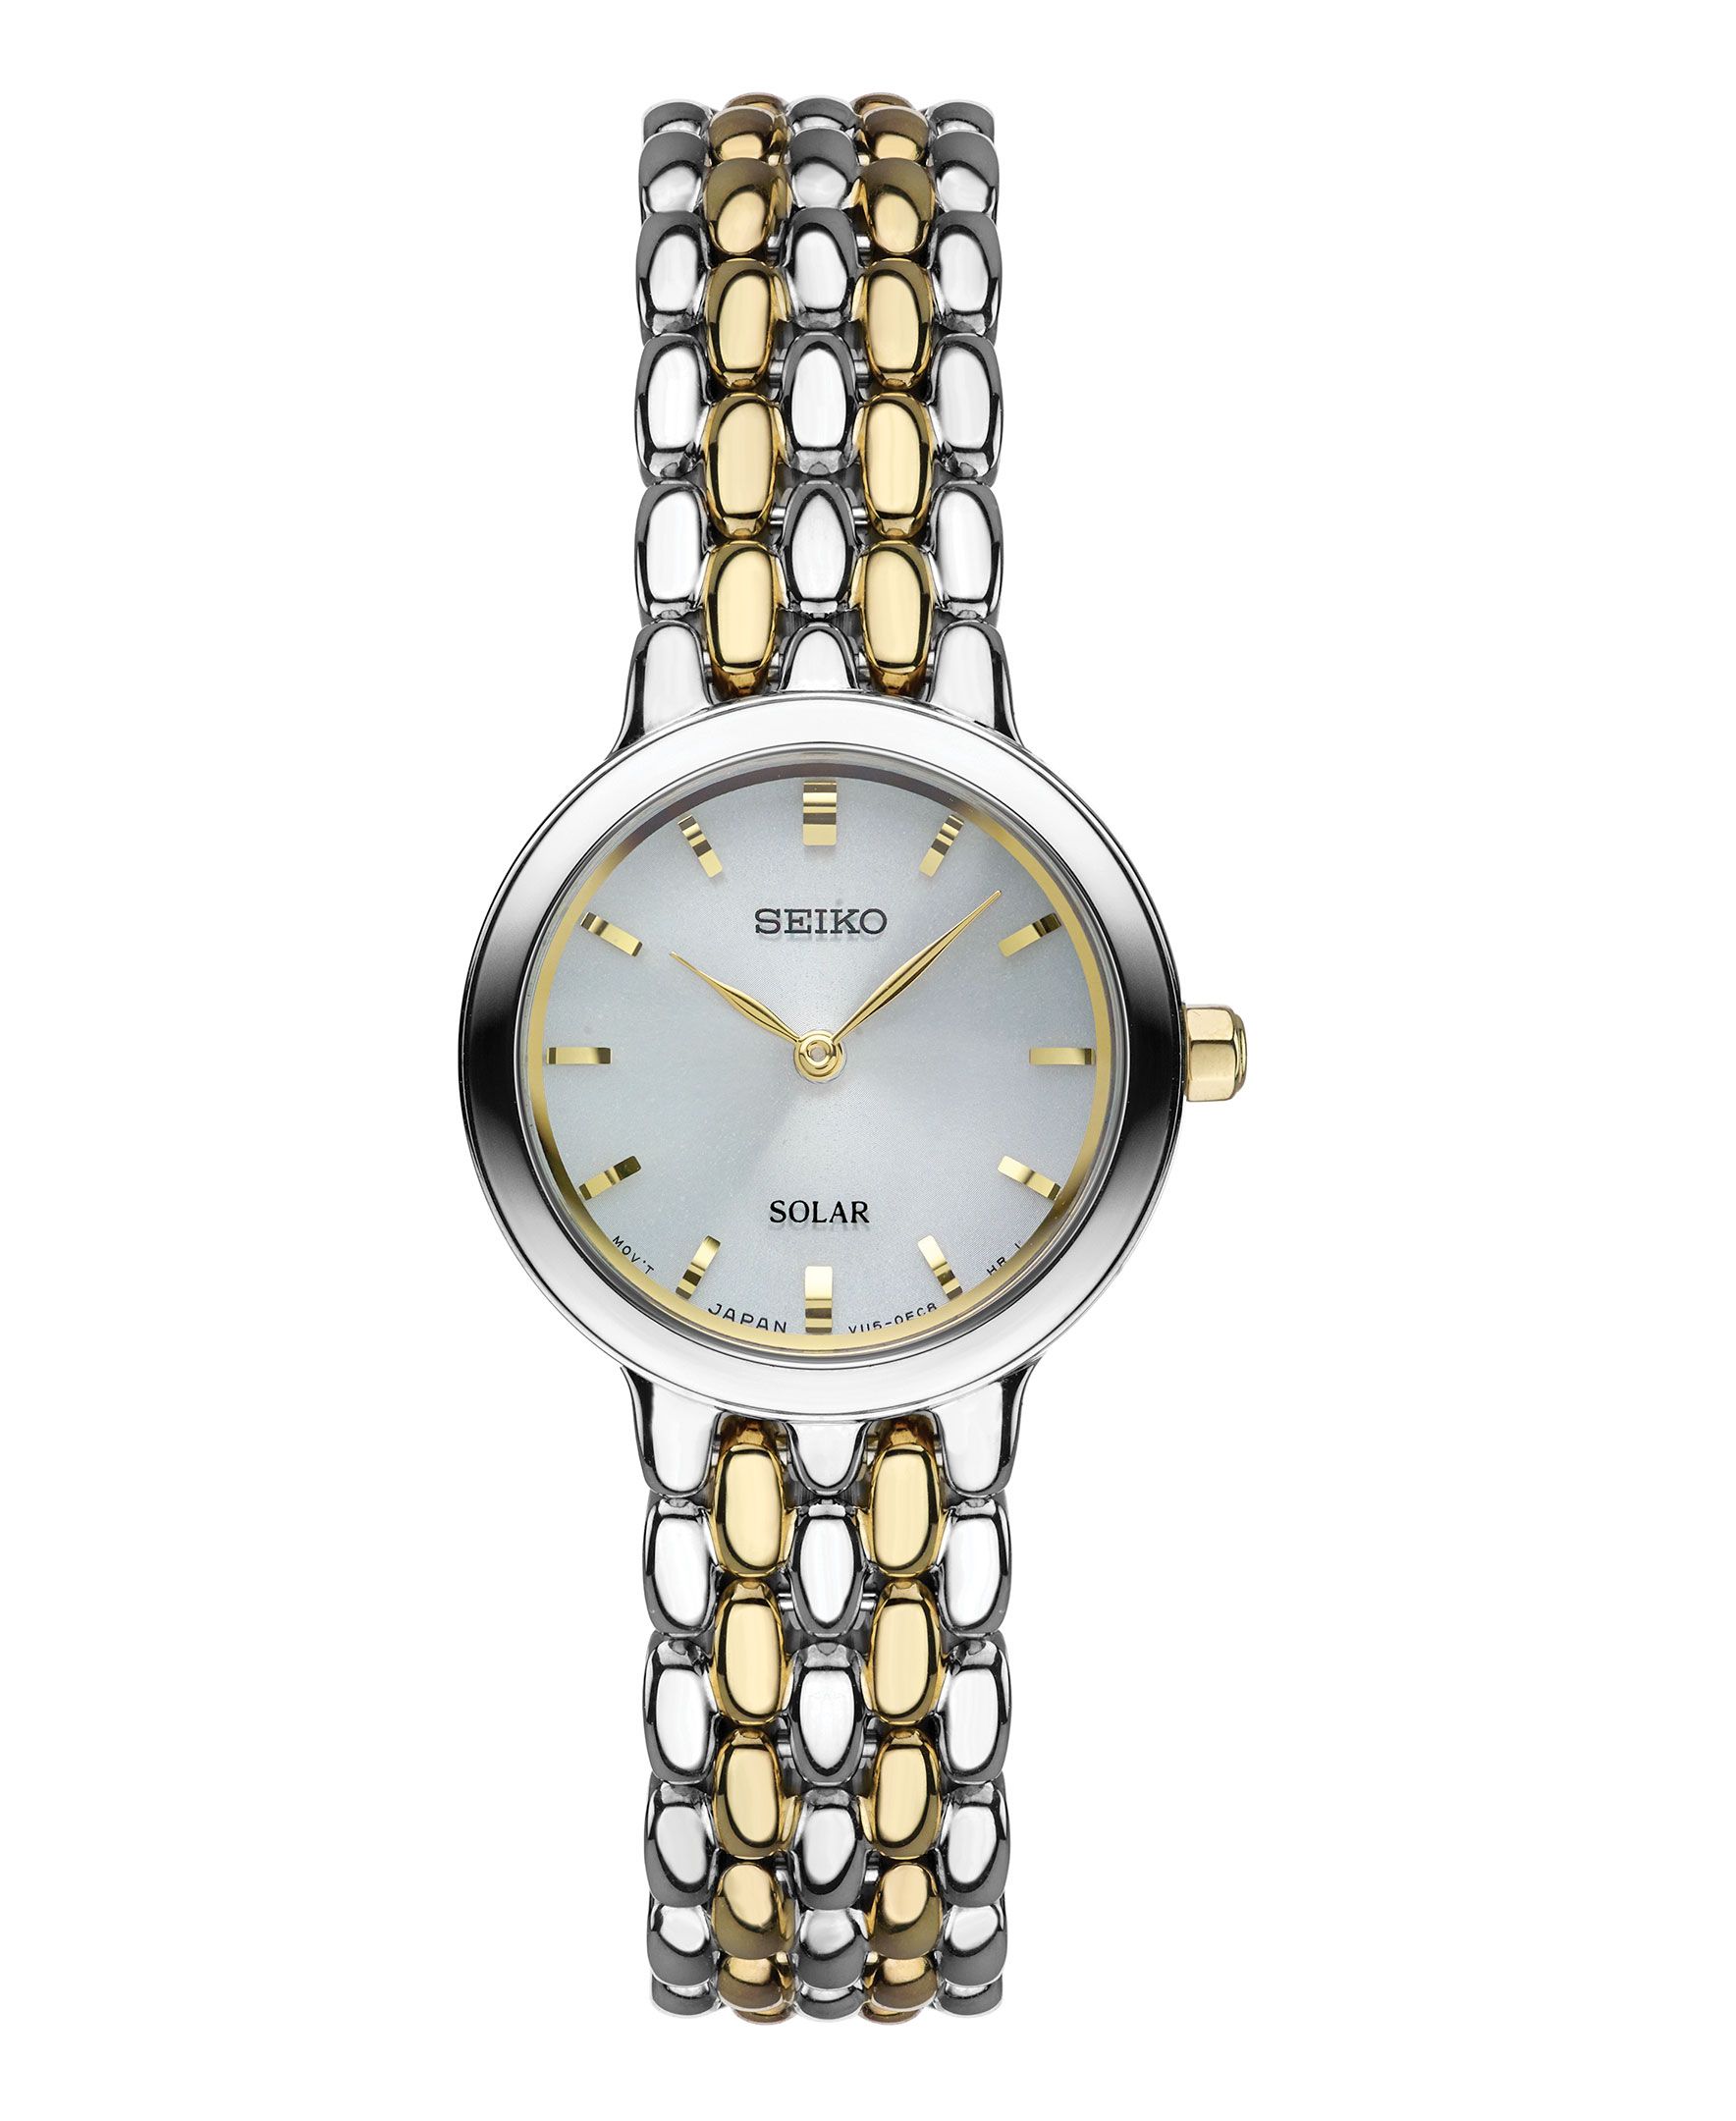 Watches | Citizen, Seiko, Bulova | L.E. Smith Jewelers | Collinsville ...